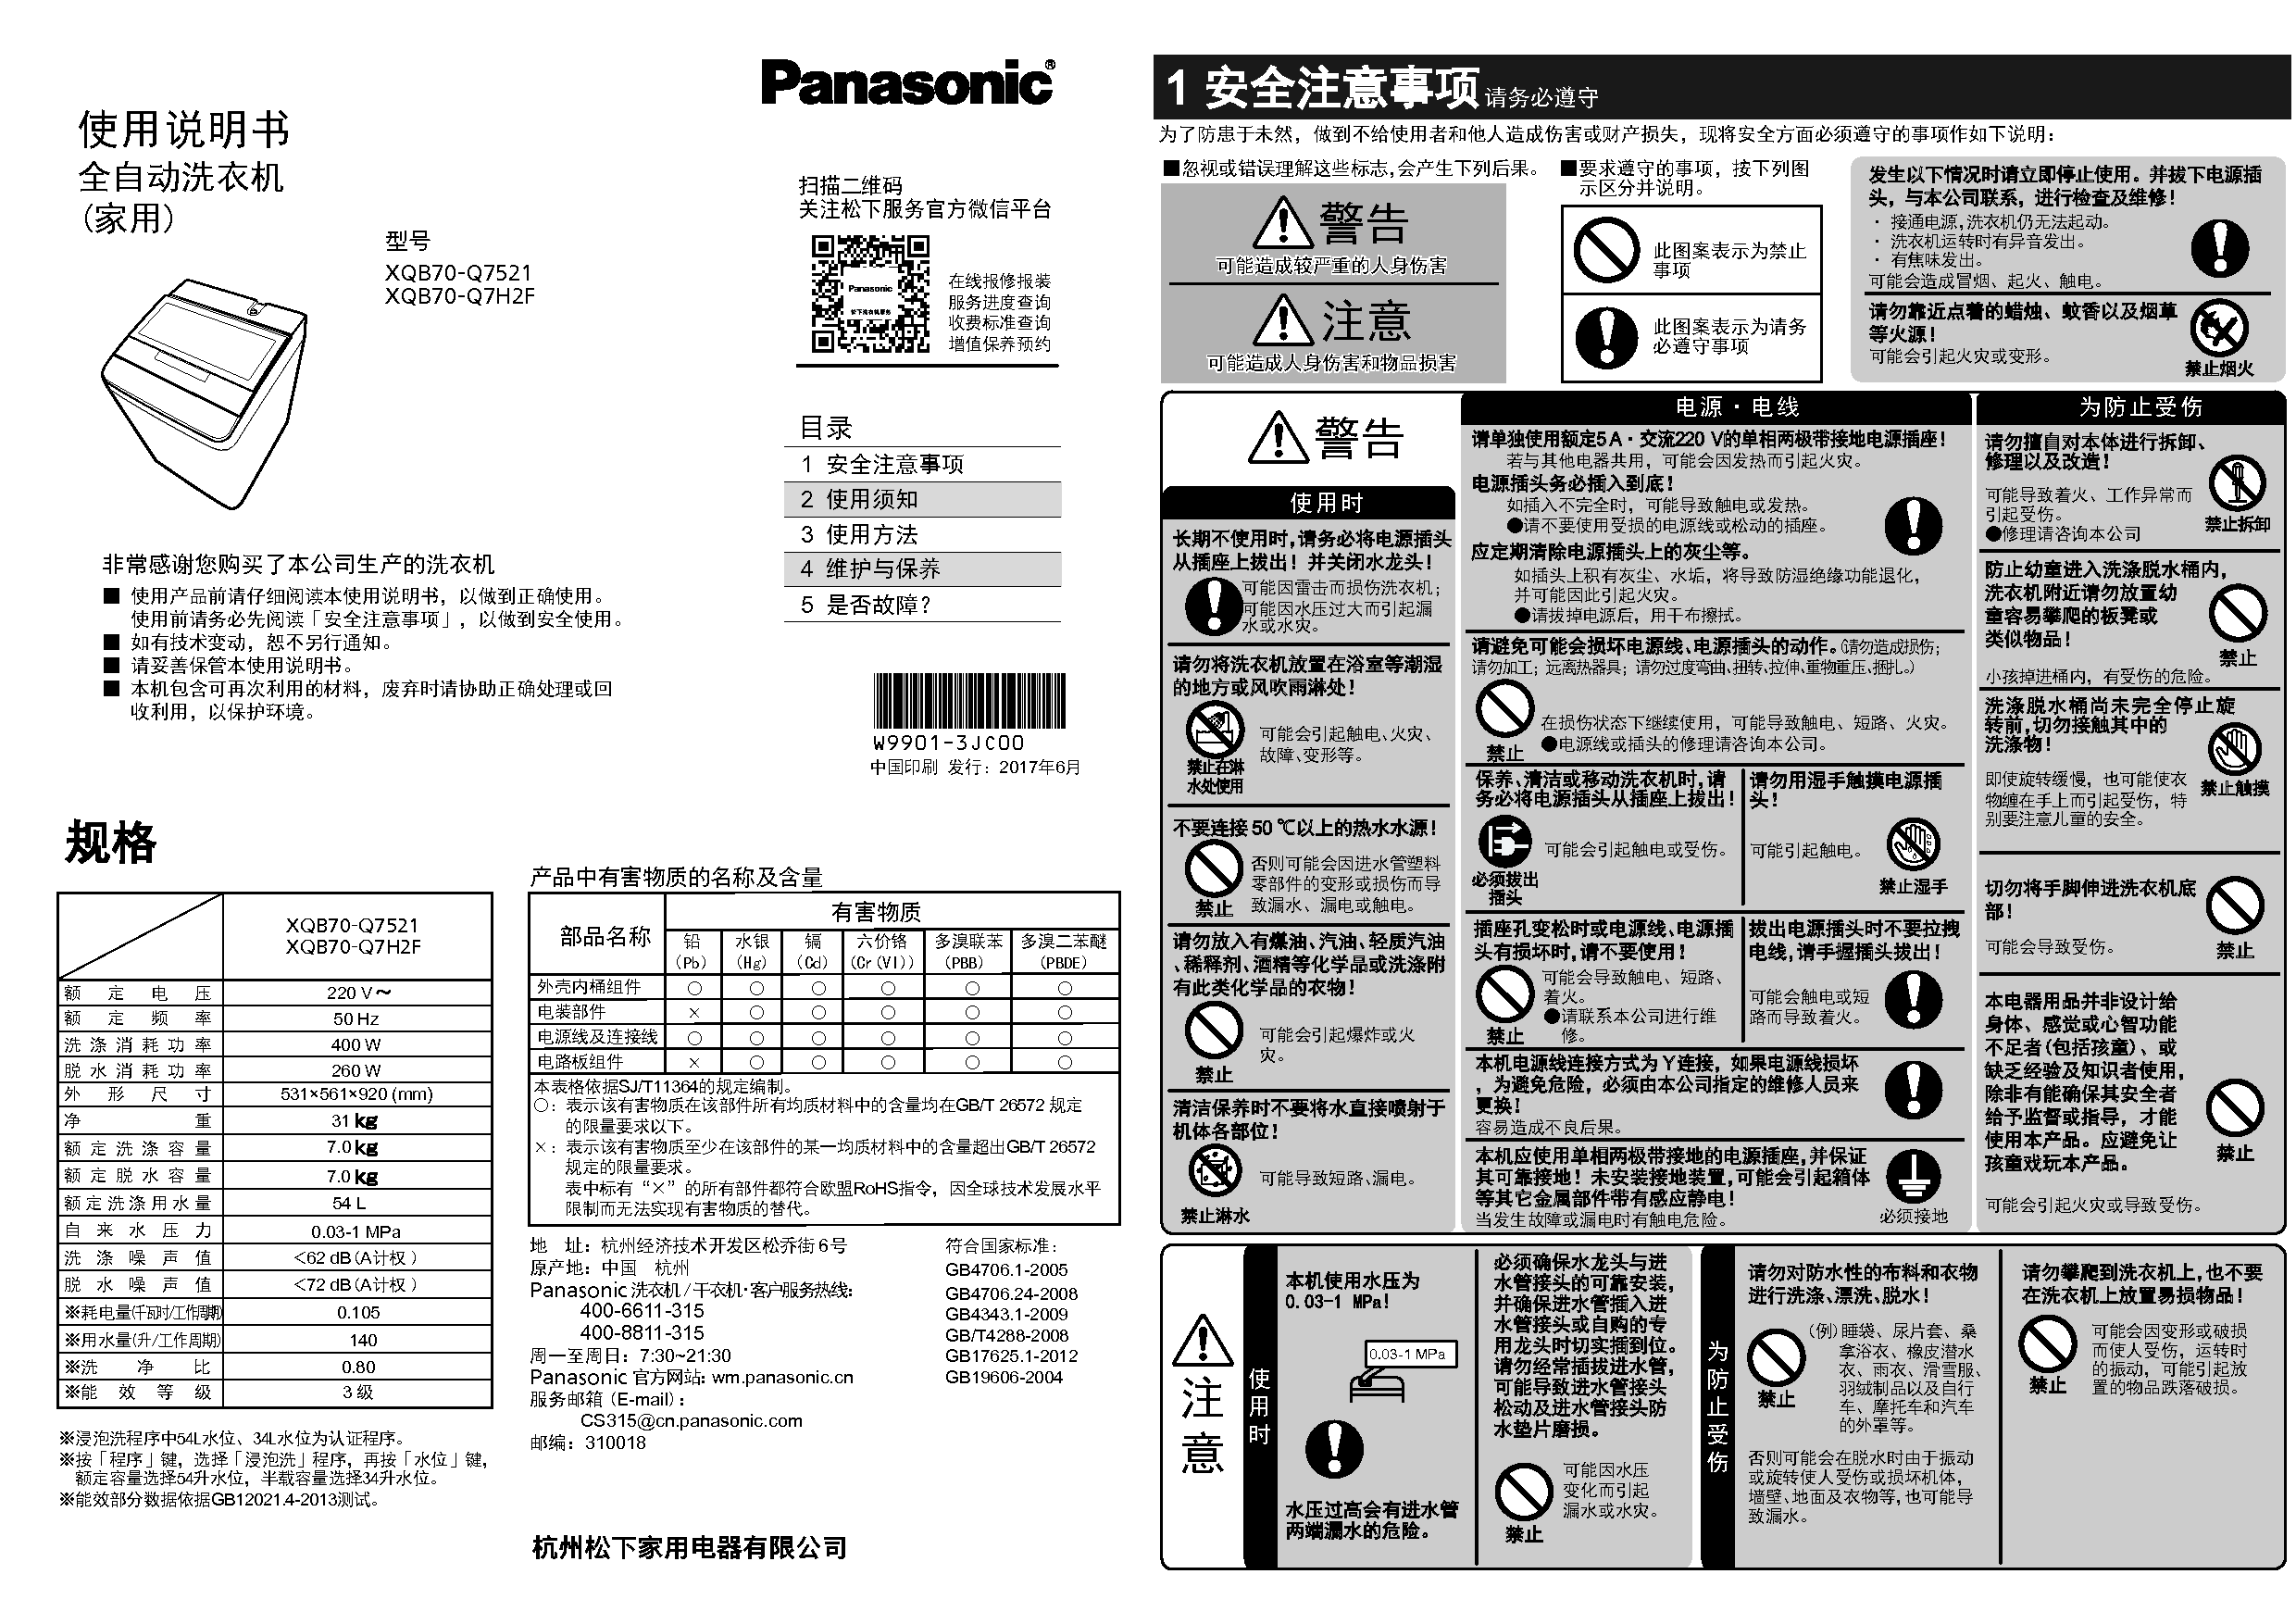 松下 Panasonic XQB70-Q7521 使用说明书 封面